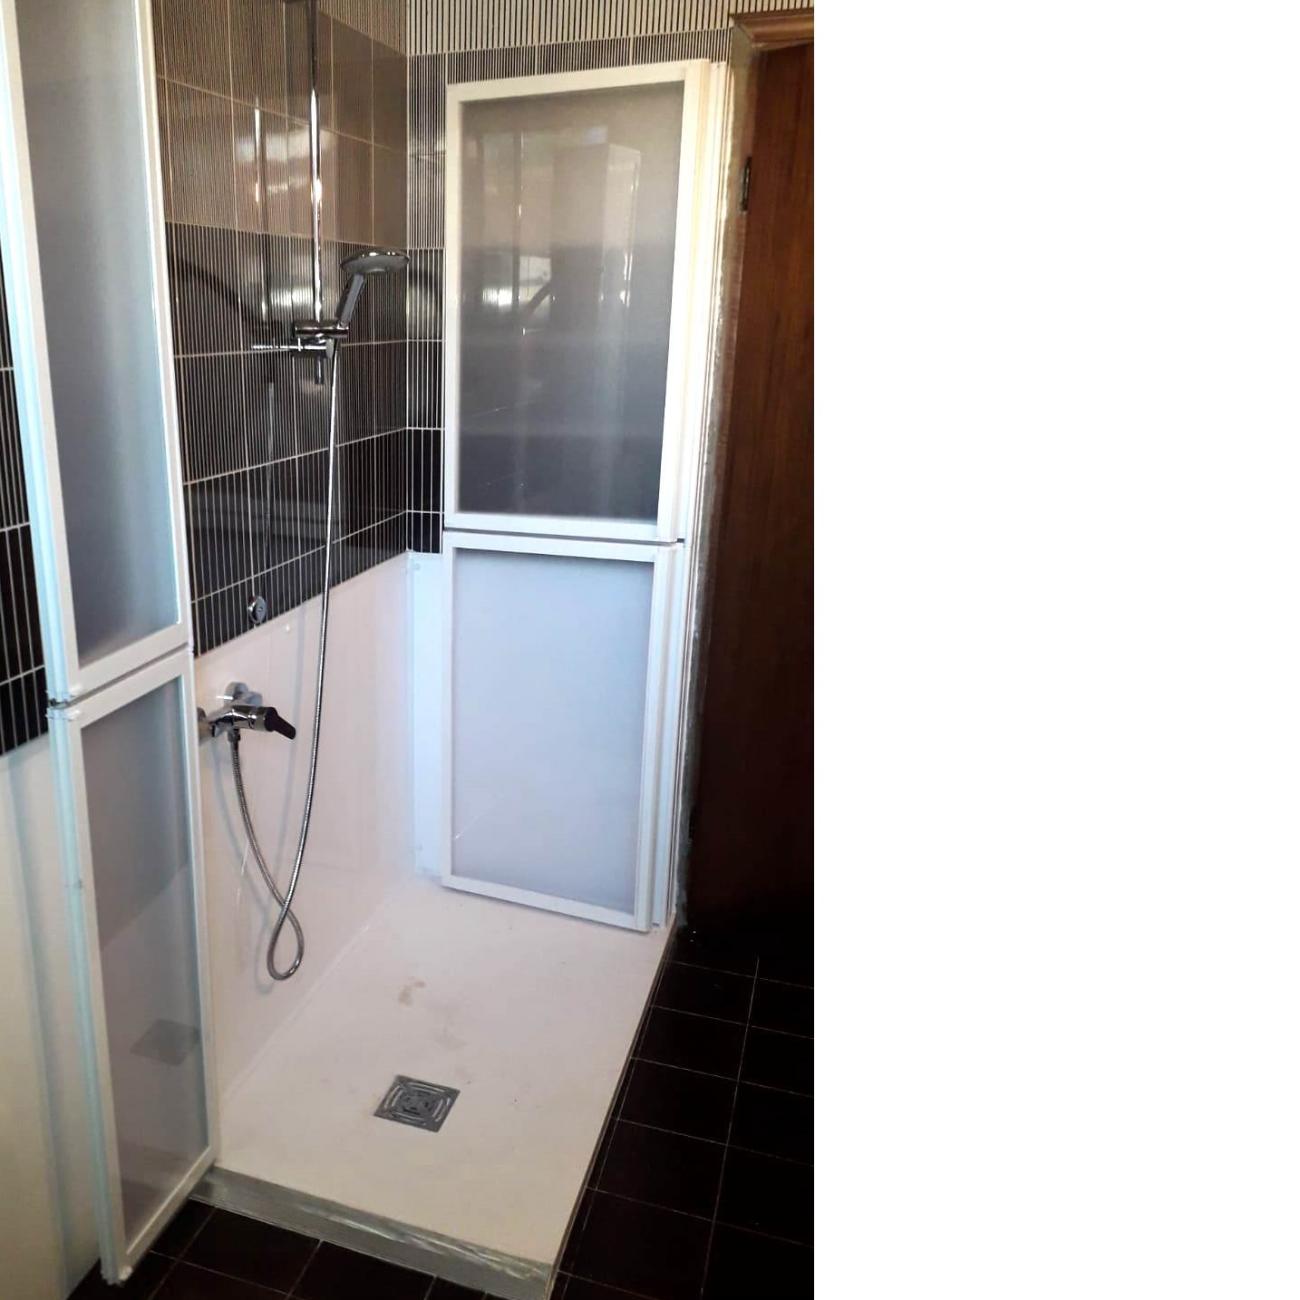 Installazione box doccia per piatto da disabili 